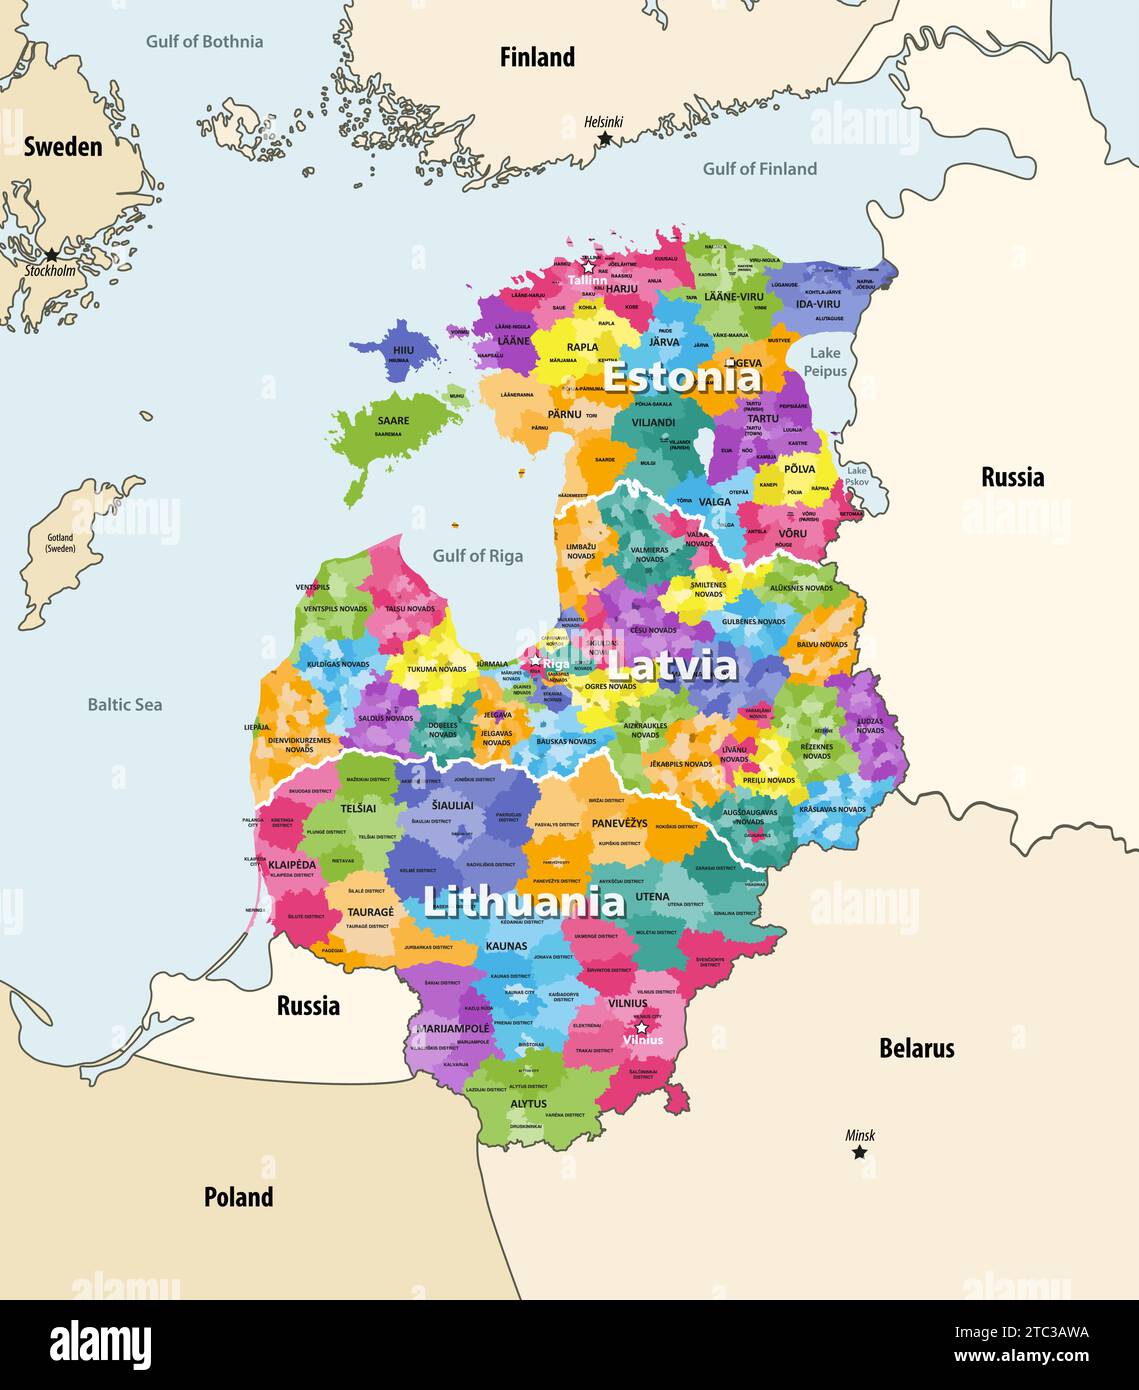 stati baltici, regione nord-orientale dell'Europa contenente i paesi di Estonia, Lettonia e Lituania, mappa politica vettoriale con il vicino distretto Illustrazione Vettoriale